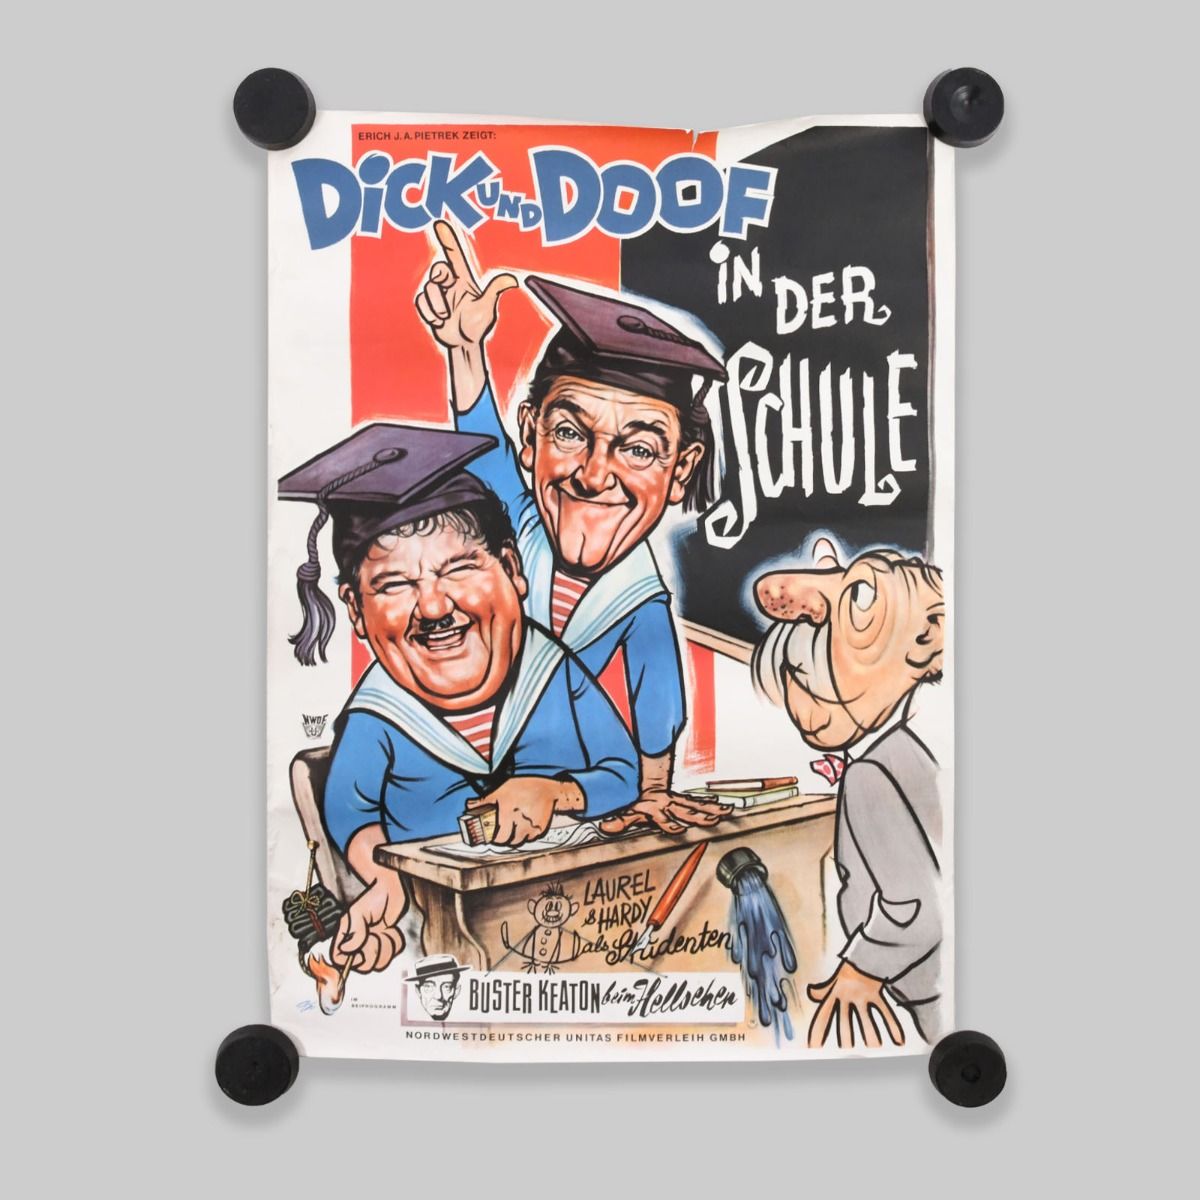 Laurel & Hardy Original 1960s German Movie Poster (Dick und Doof in der Schule)